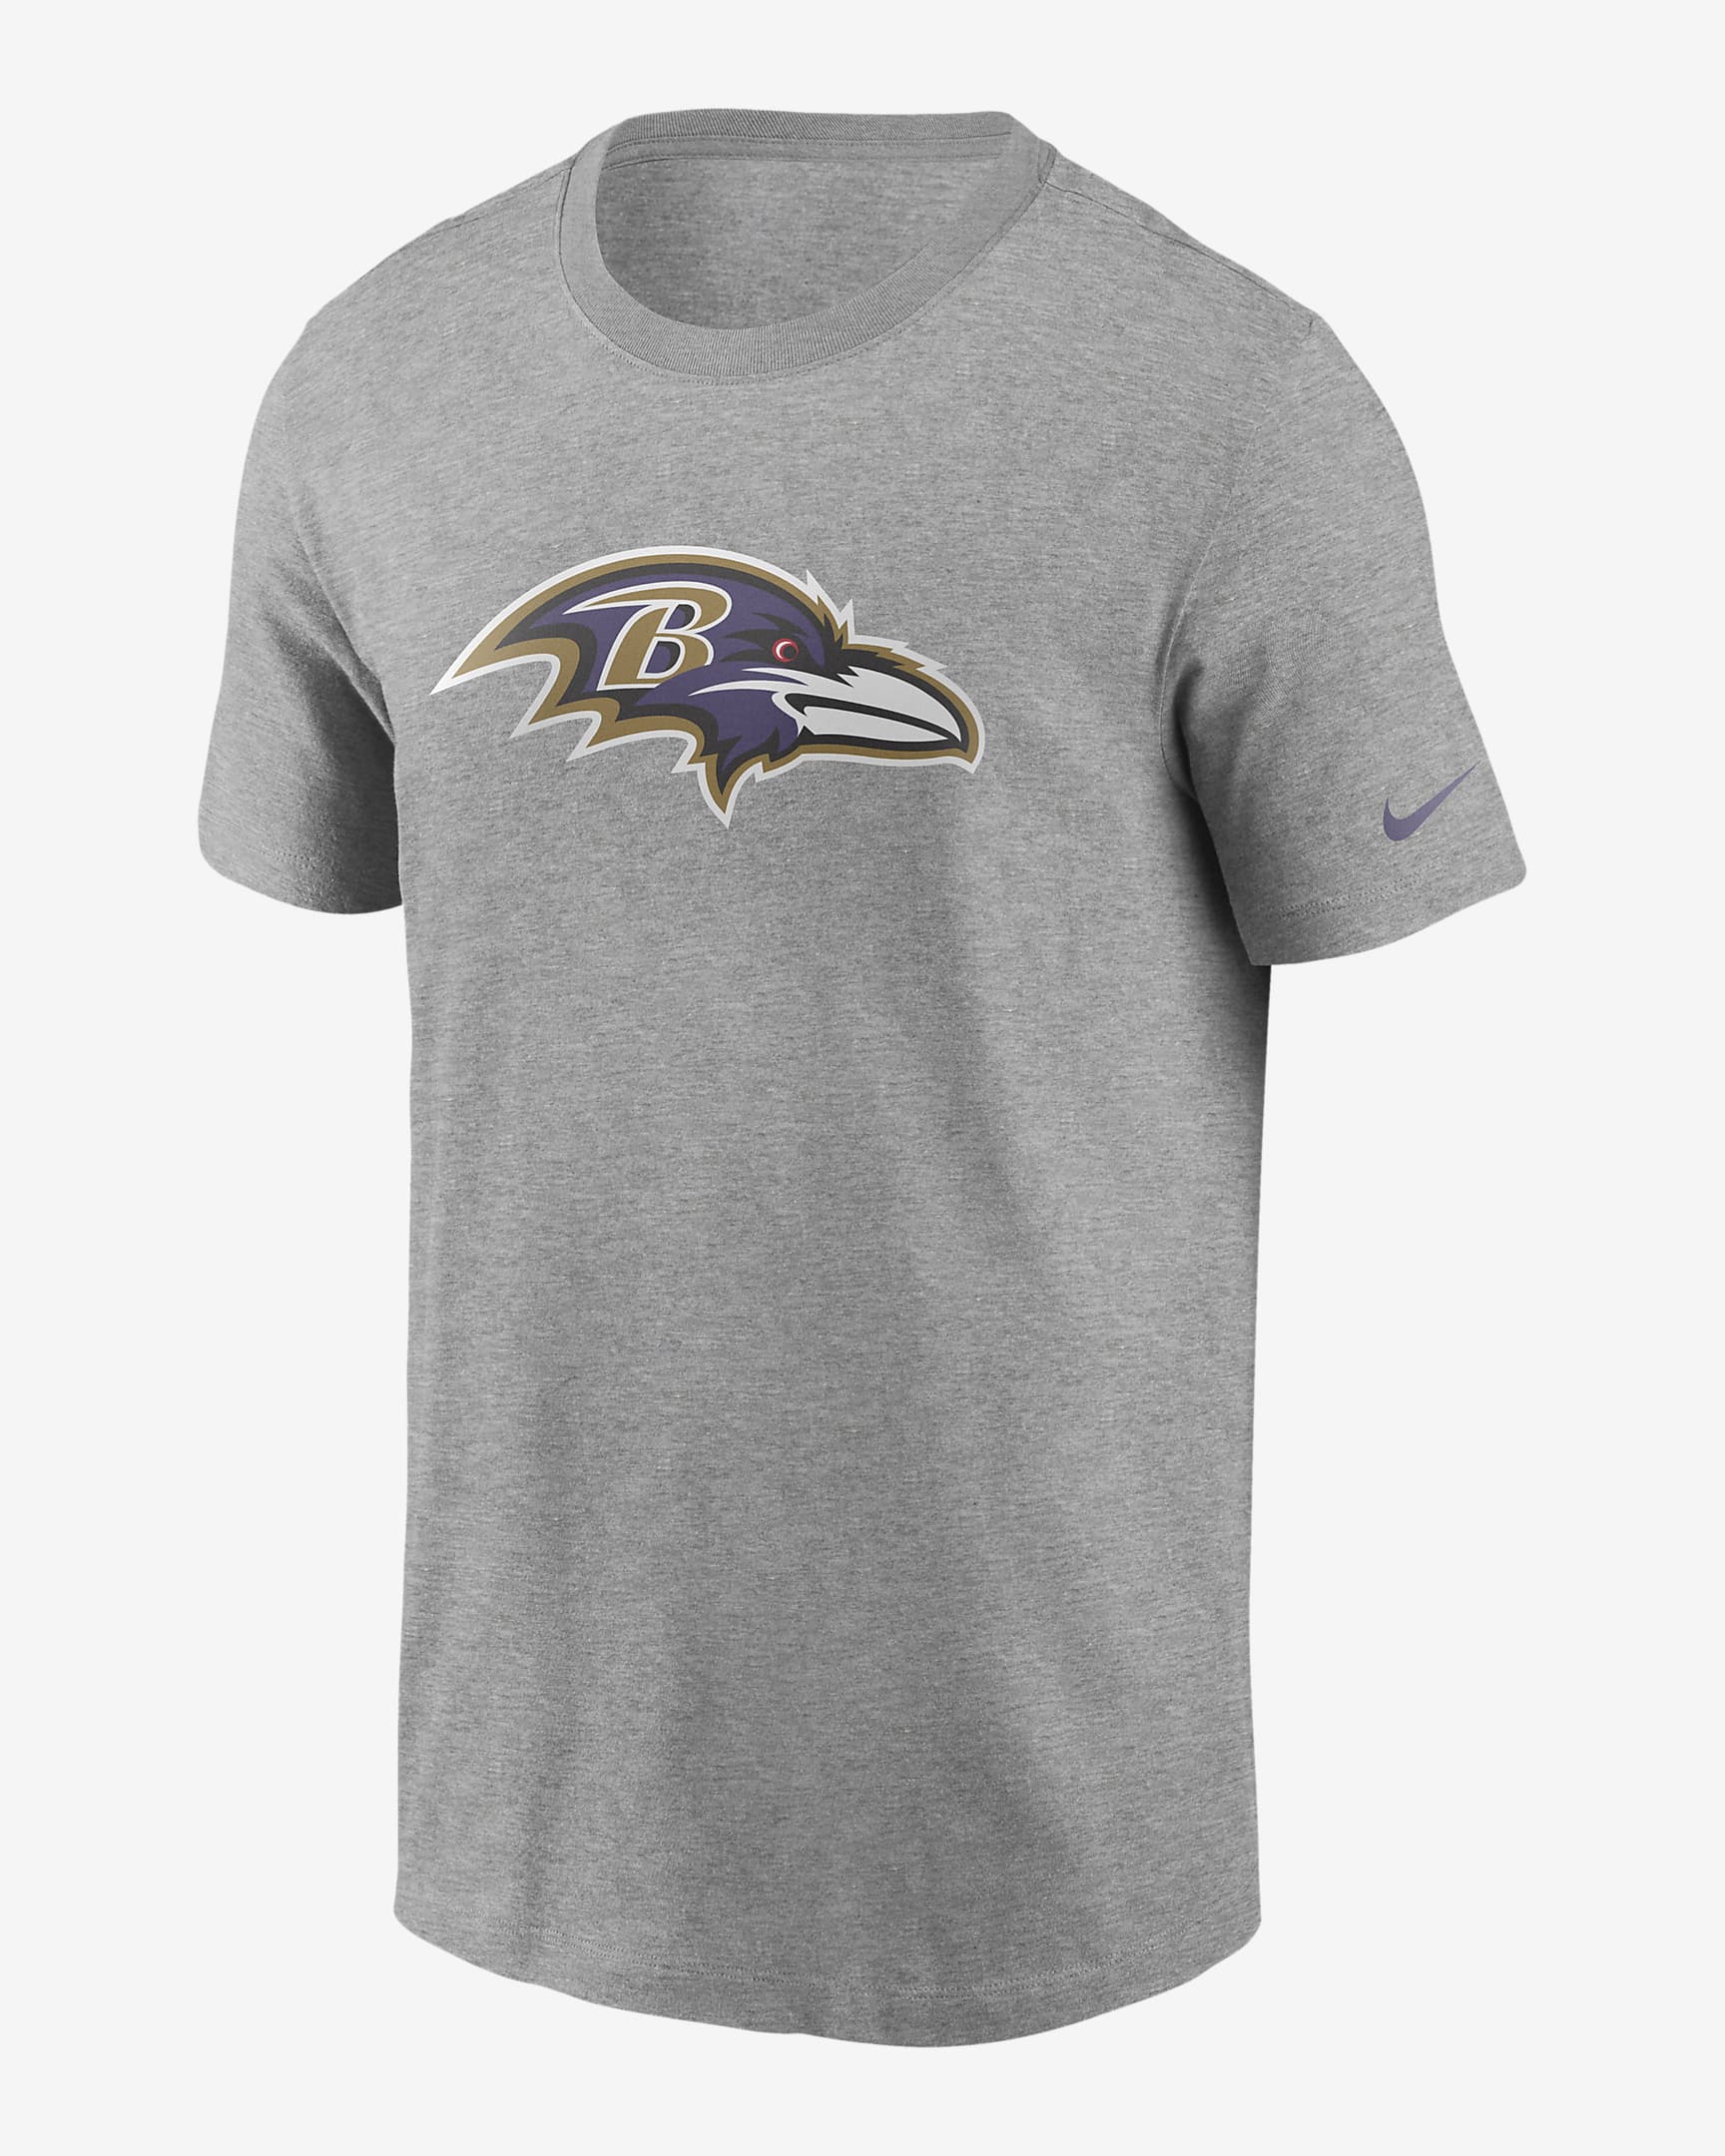 Playera para hombre Nike Logo Essential (NFL Baltimore Ravens). Nike.com